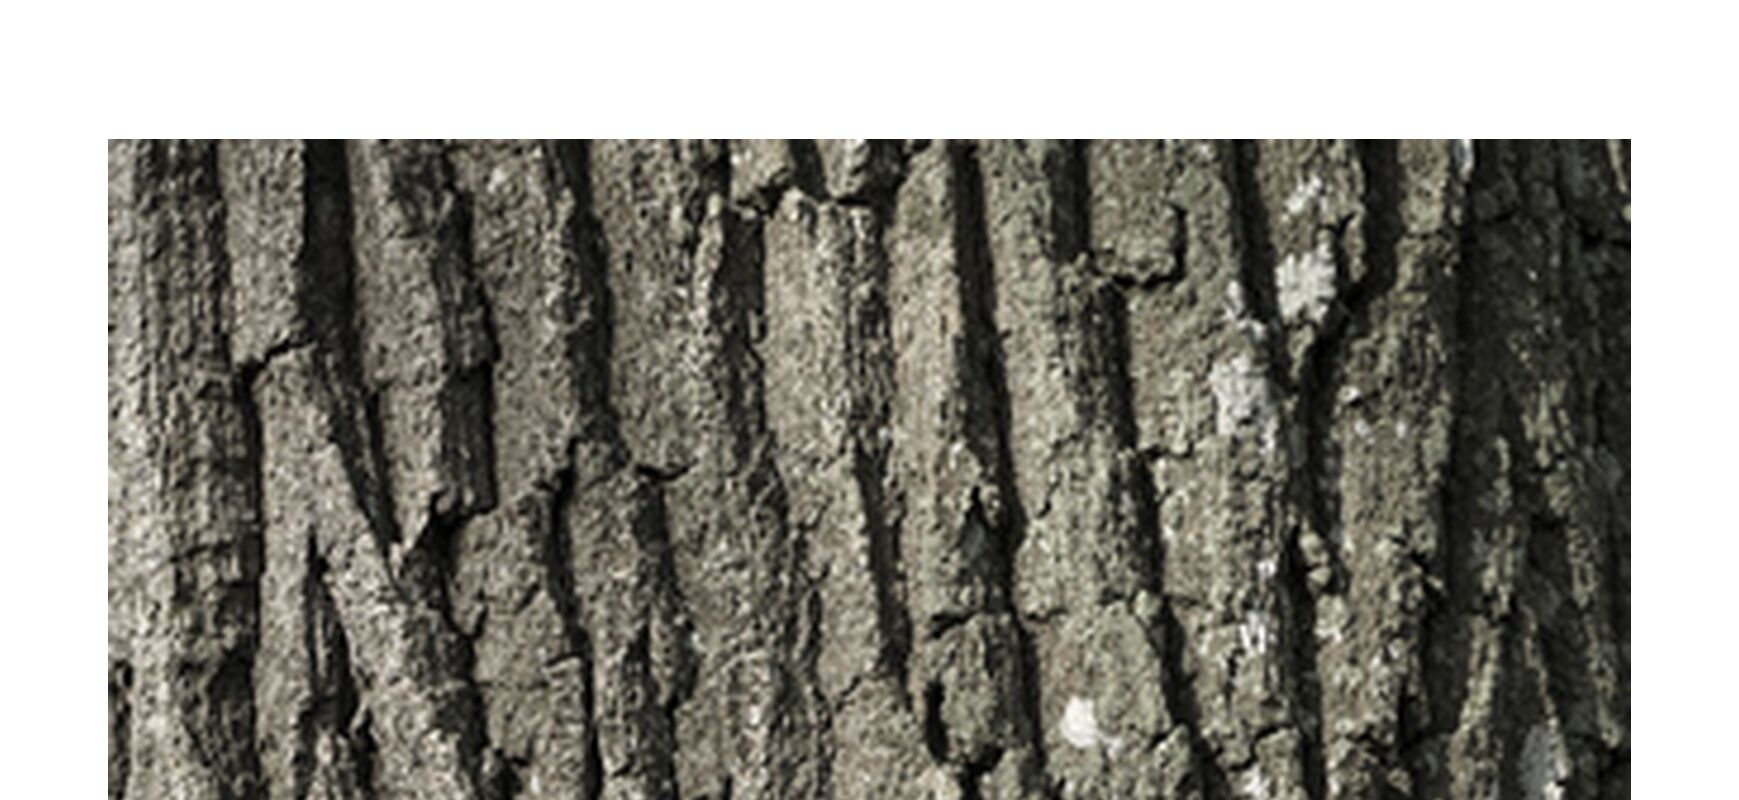 SOUS TA PEAU 5 de jean michel RENAUDIN, Prodi Art, Matériel, Lierre, tronc, forêt, arbre, matière, vivante, vivant, écorce